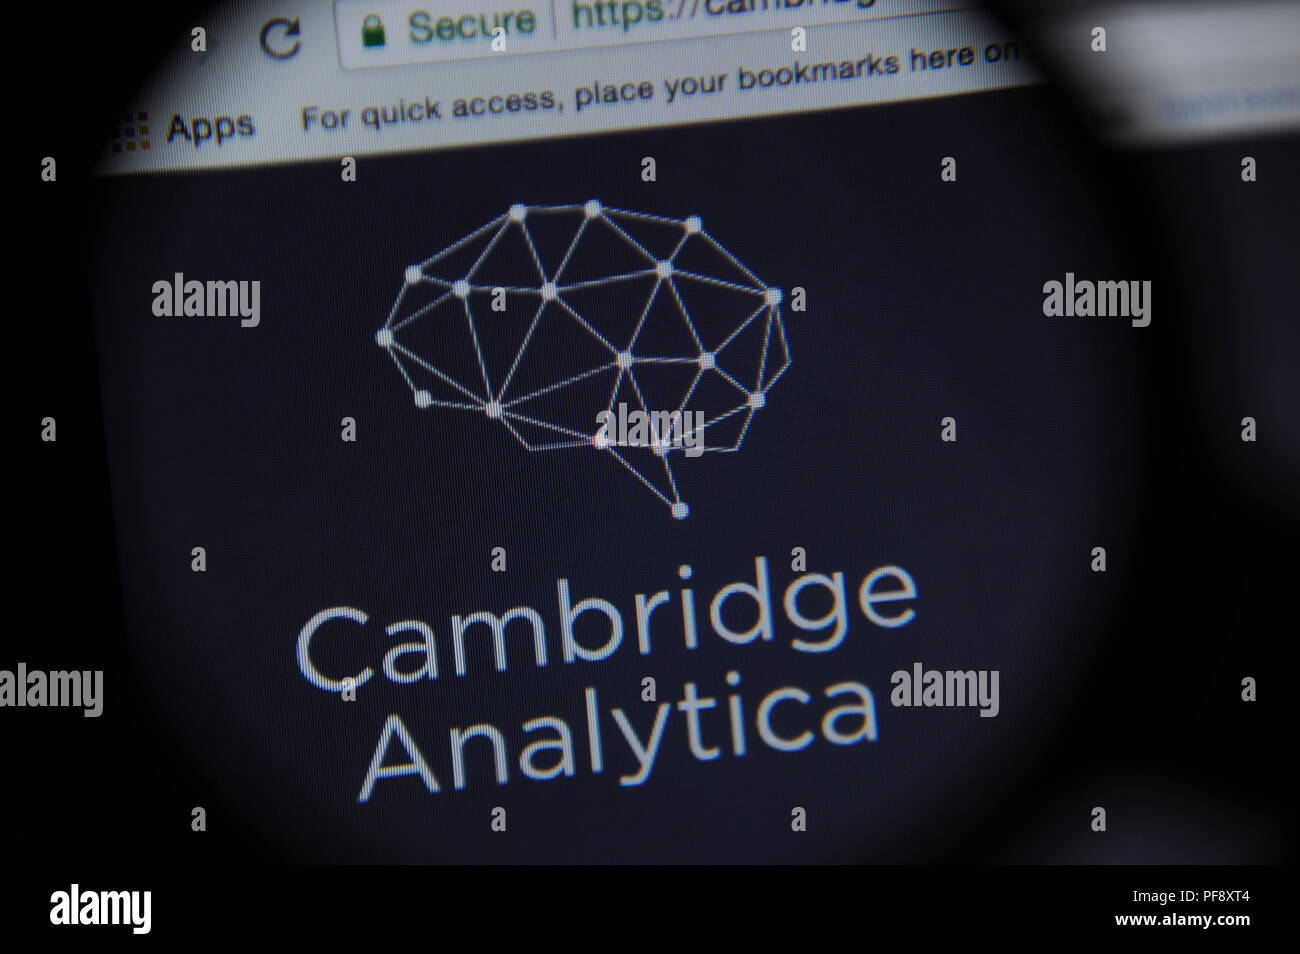 L'Analytica Cambridge internet site vu à travers une loupe Banque D'Images